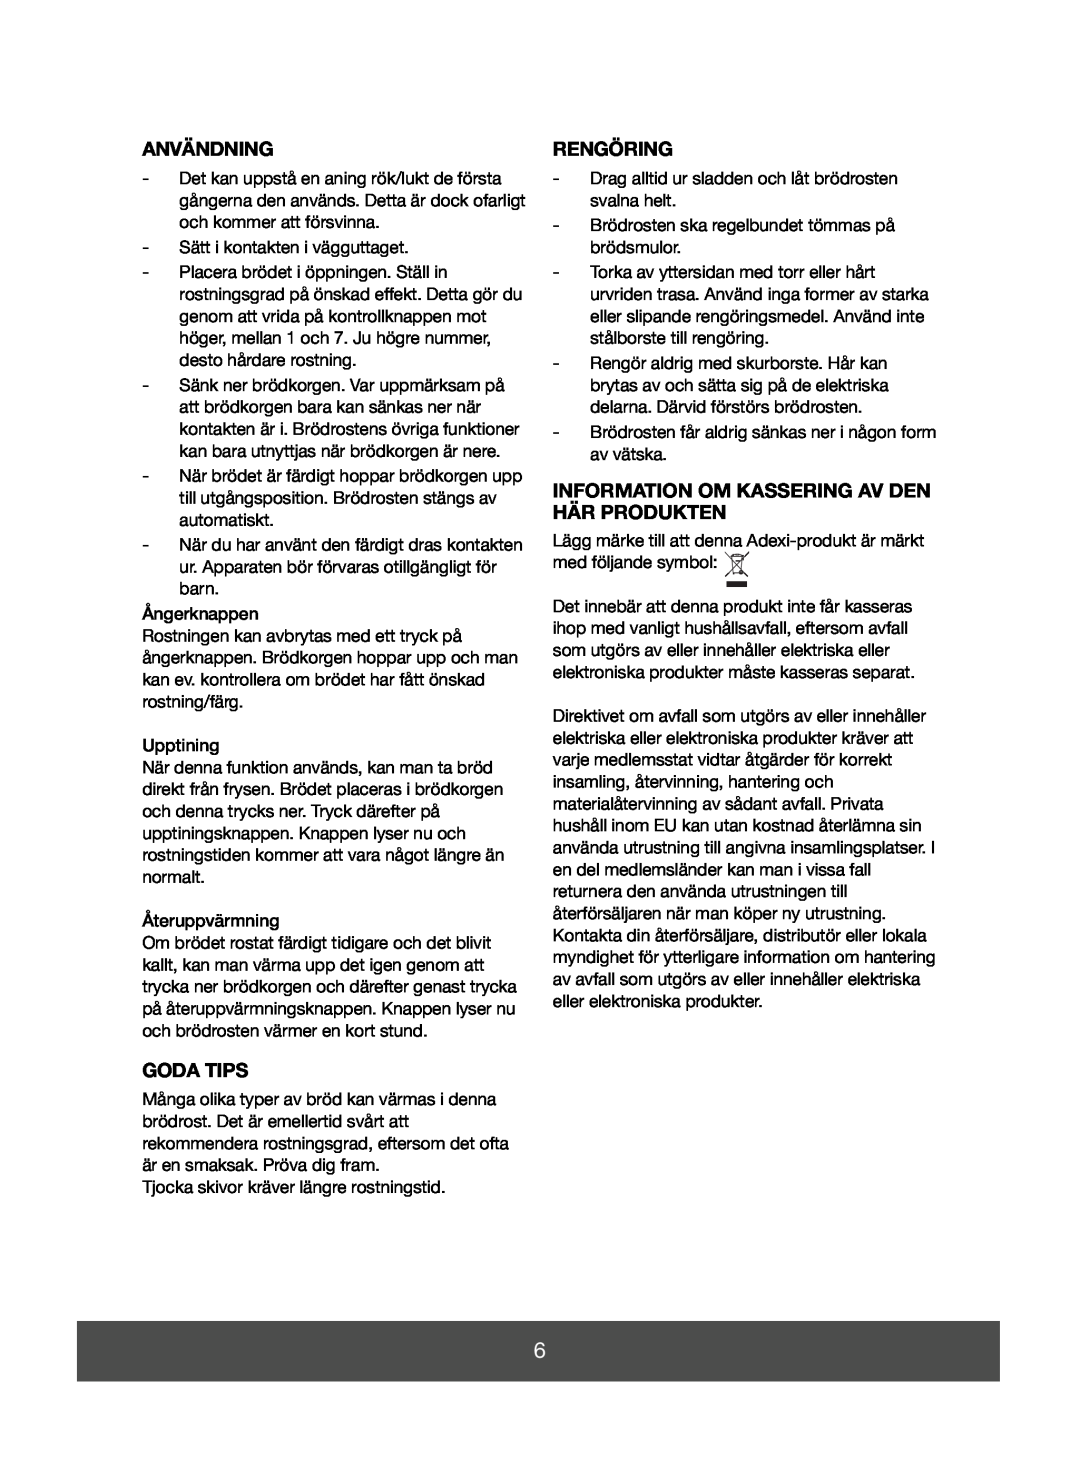 Melissa 643-070 manual Användning, Goda Tips, Rengöring, Information Om Kassering Av Den Här Produkten 